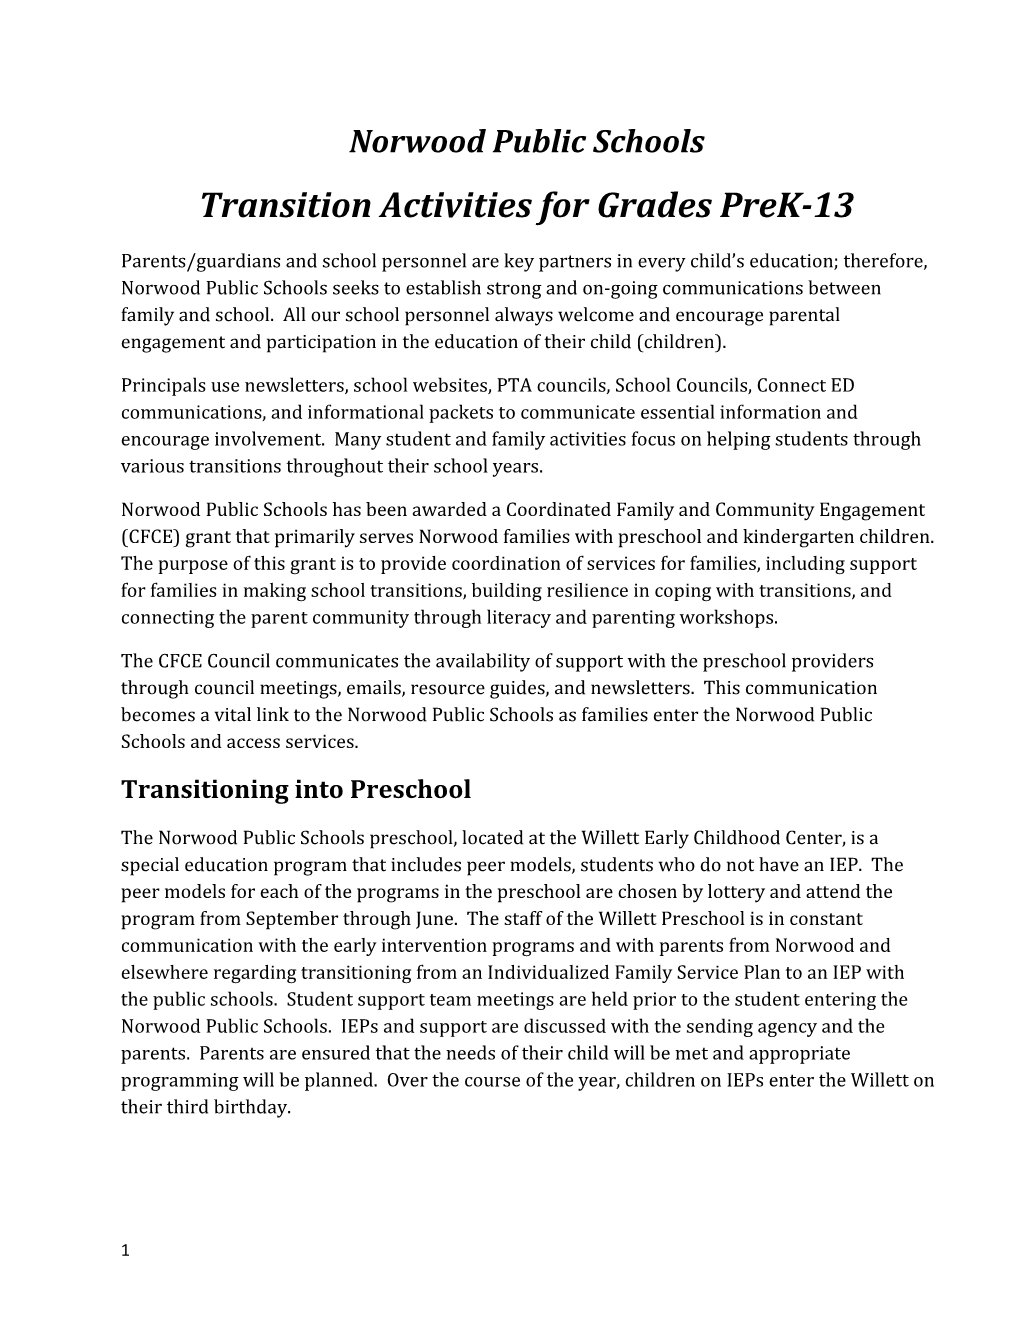 Transition Activities for Grades Prek-13